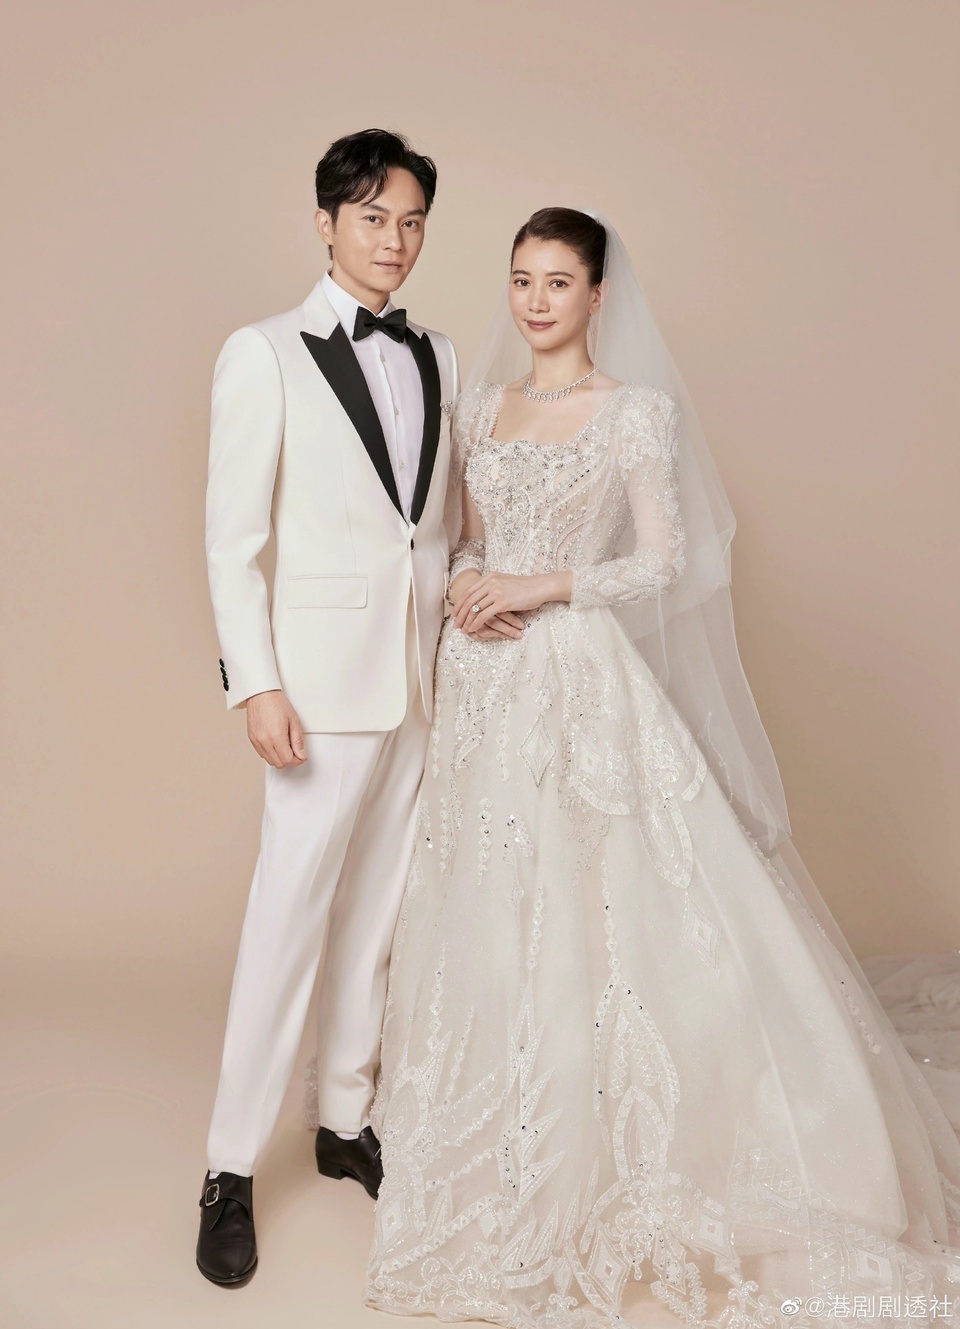 Sau gần 20 năm kết hôn, cựu hoa hậu Viên Vịnh Nghi lần đầu mặc váy cưới-4